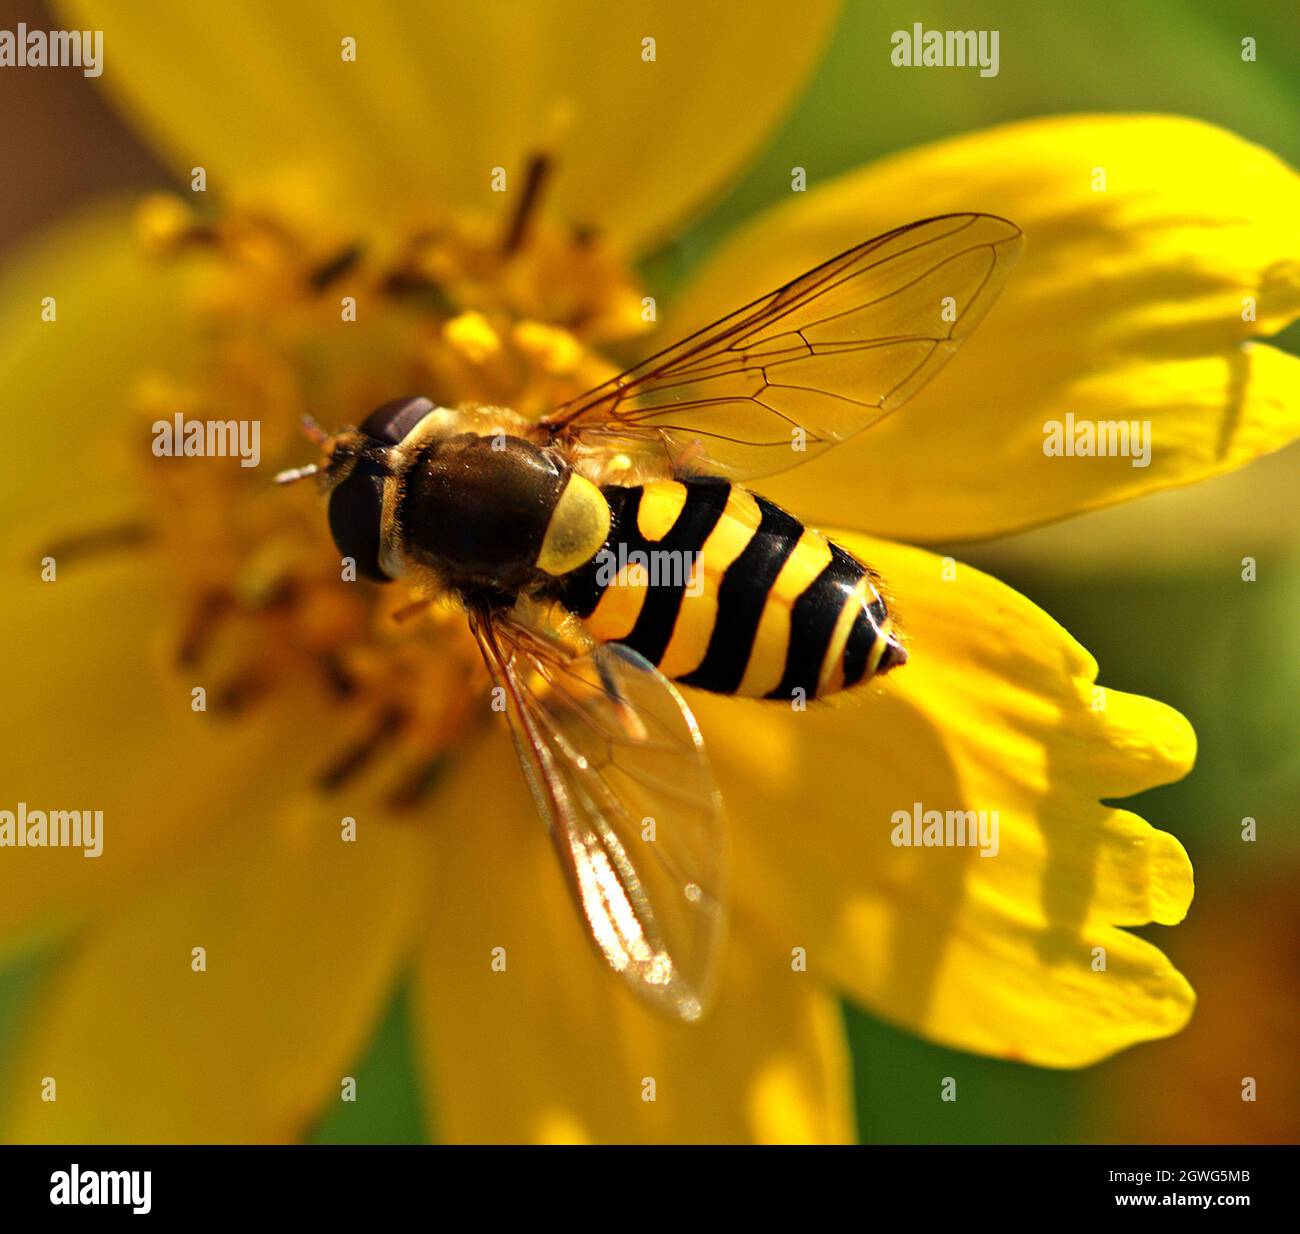 Une abeille est assise sur une fleur jaune.Le nom de la fleur est oeil de fille , Coreopsis. Banque D'Images